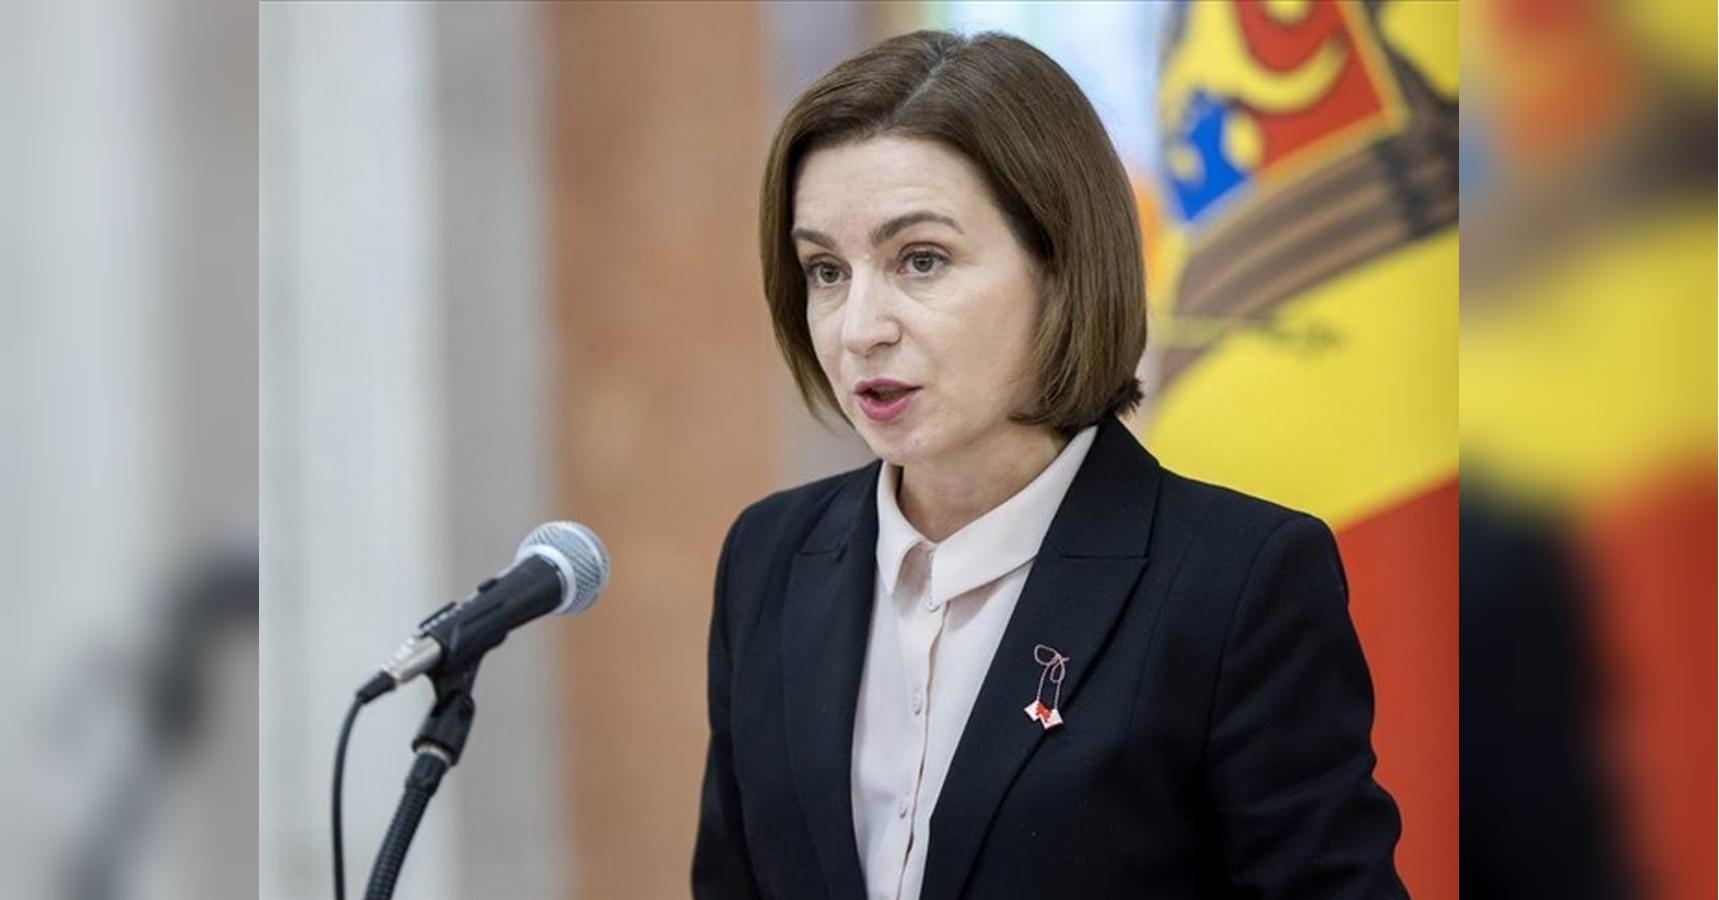 «Ми знаємо, що кремль має погані наміри щодо нашої країни», — президентка Молдови